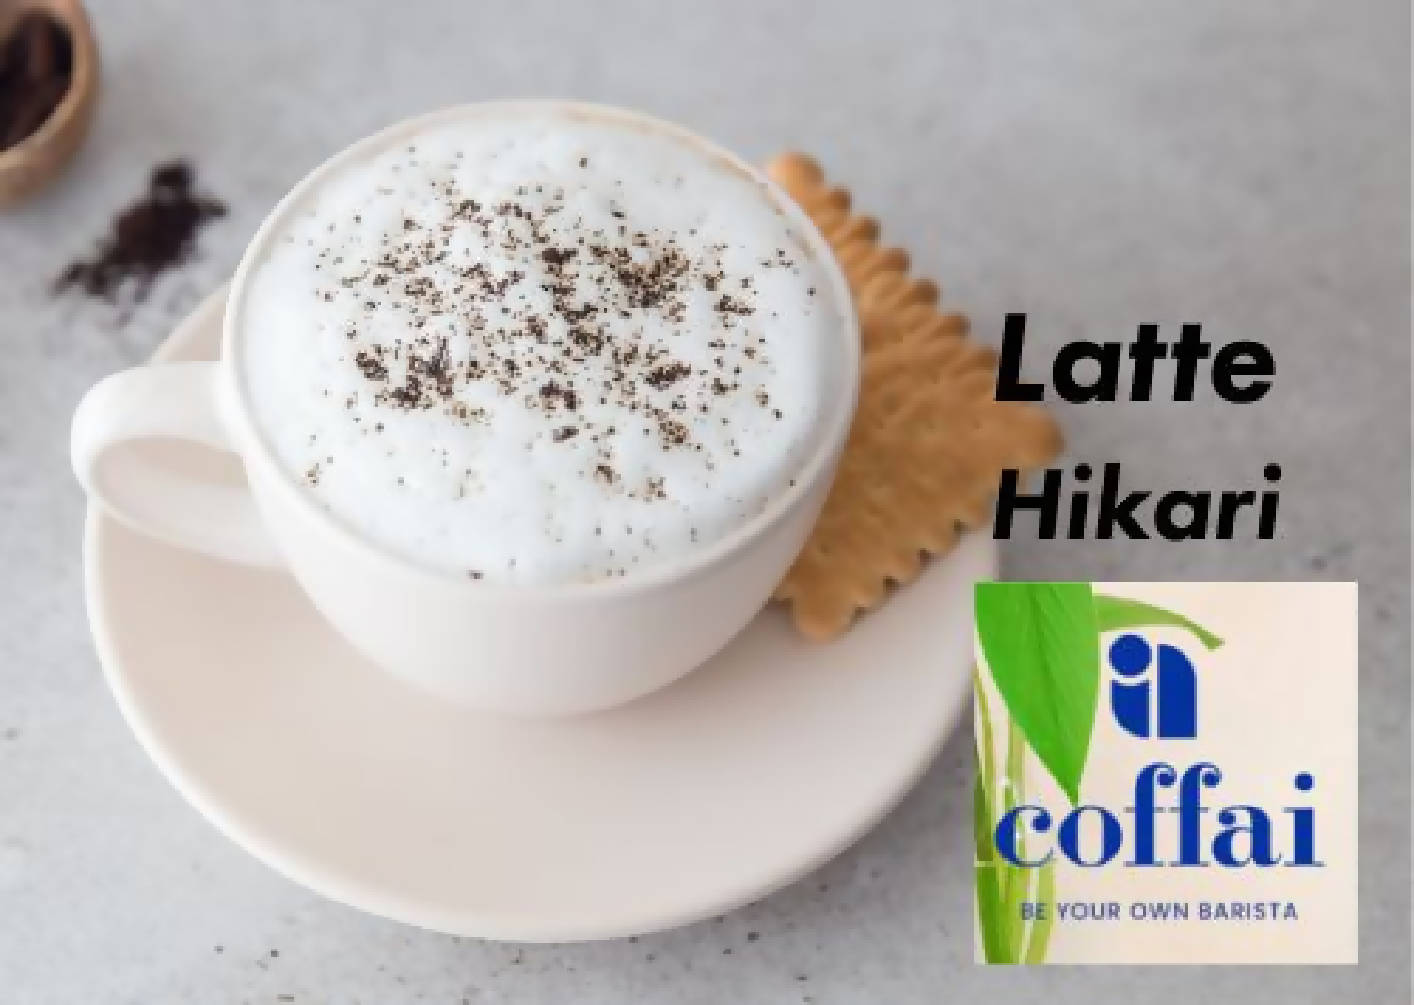 Latte - Hikari